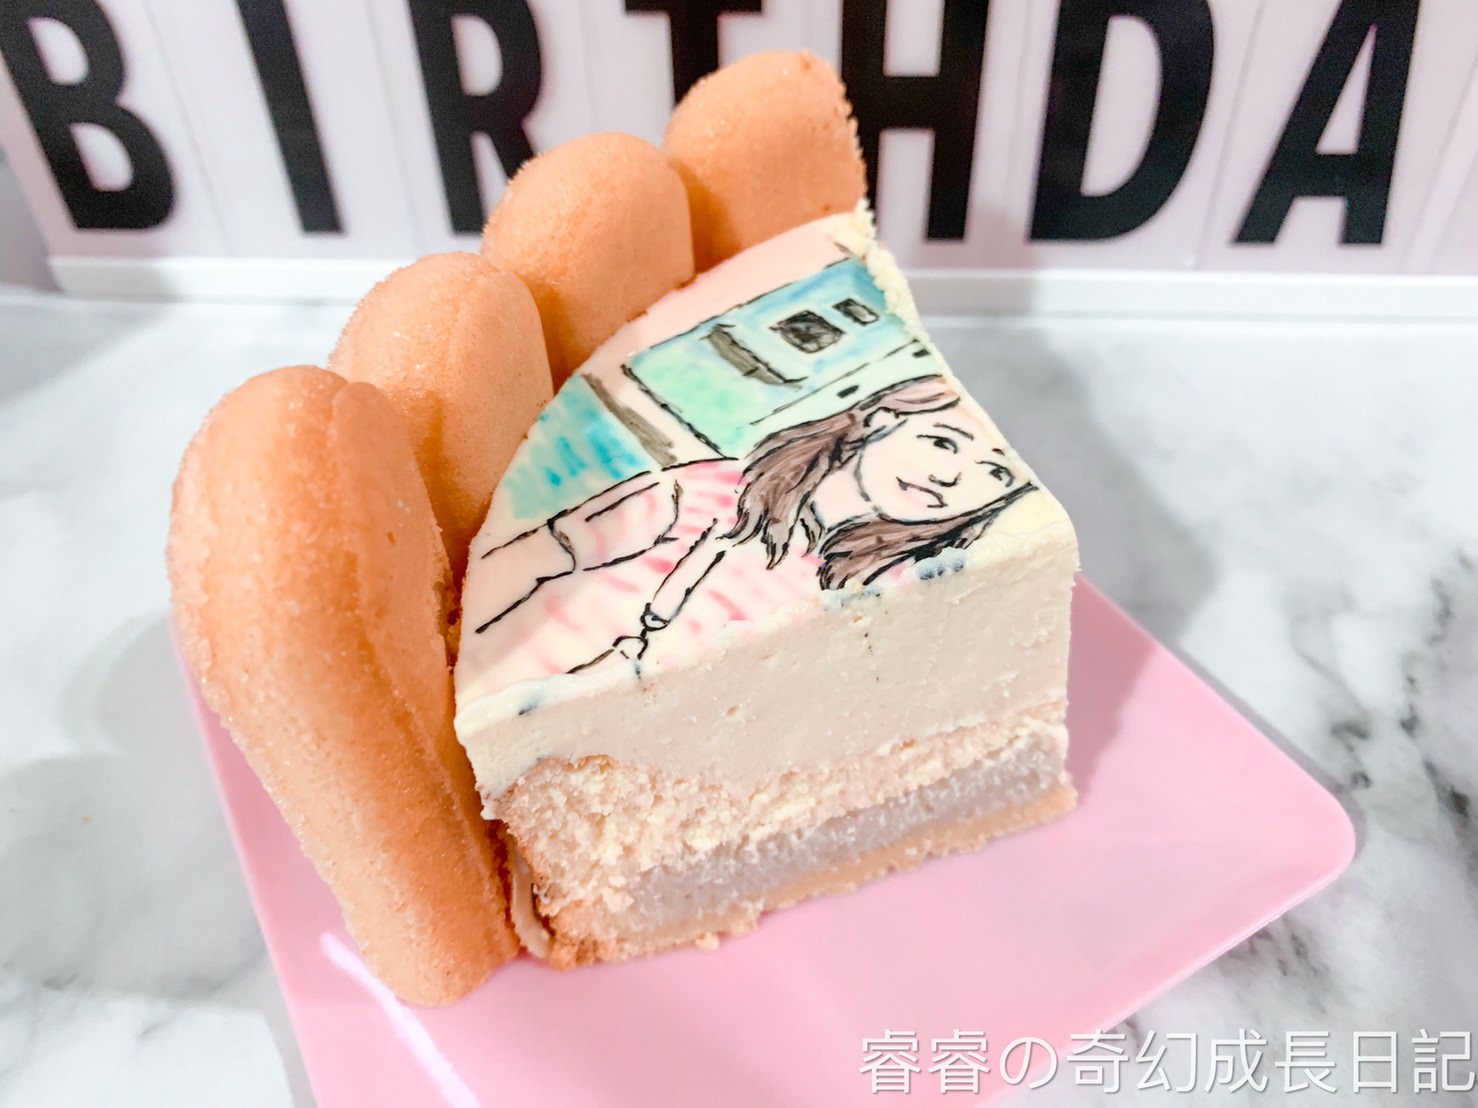 生日蛋糕 210109 5